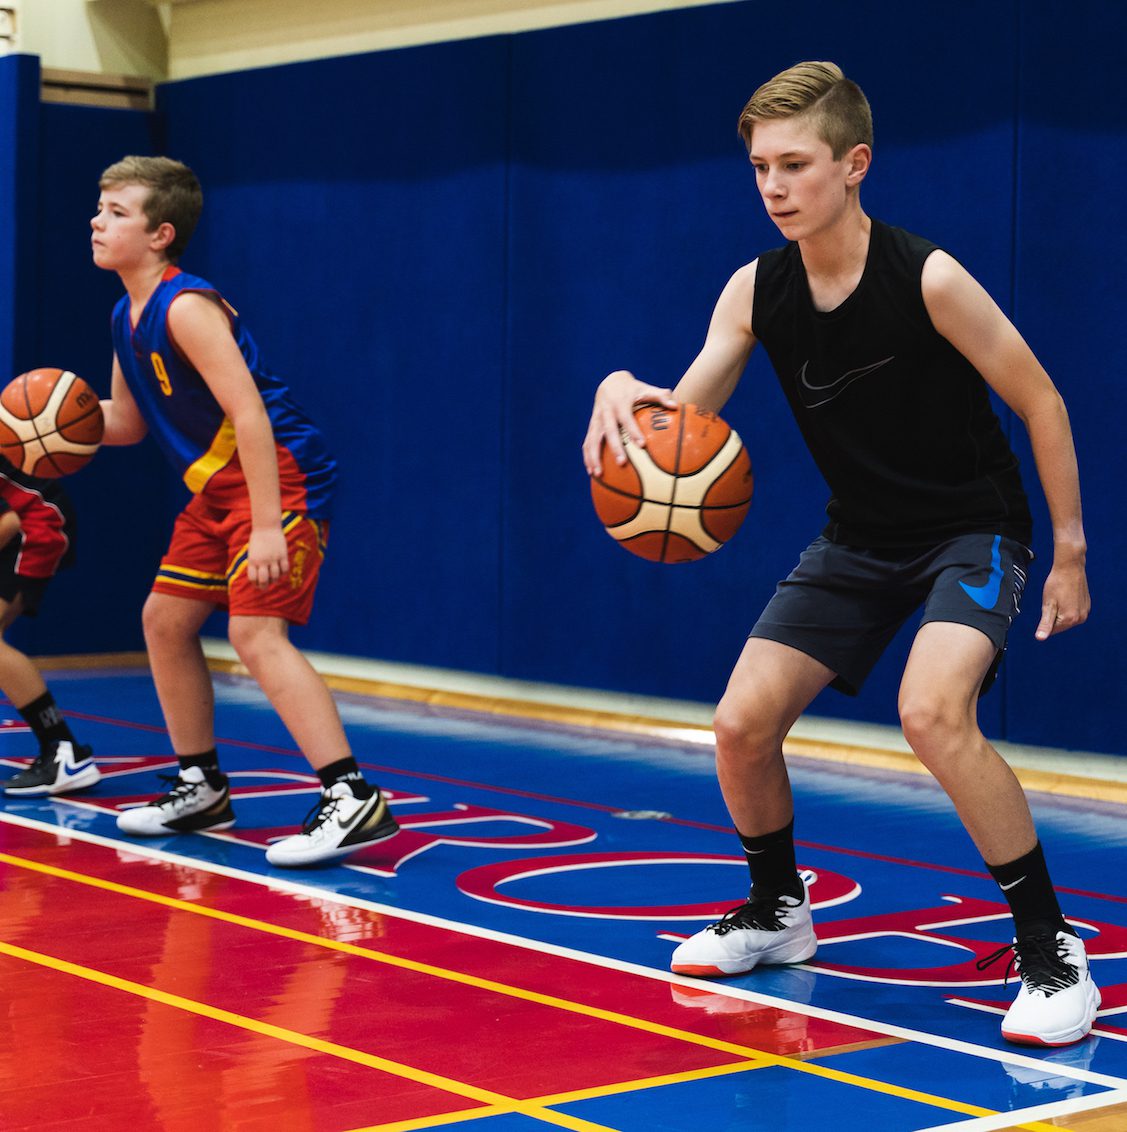 Boy dribbling basketball at holiday skills clinic